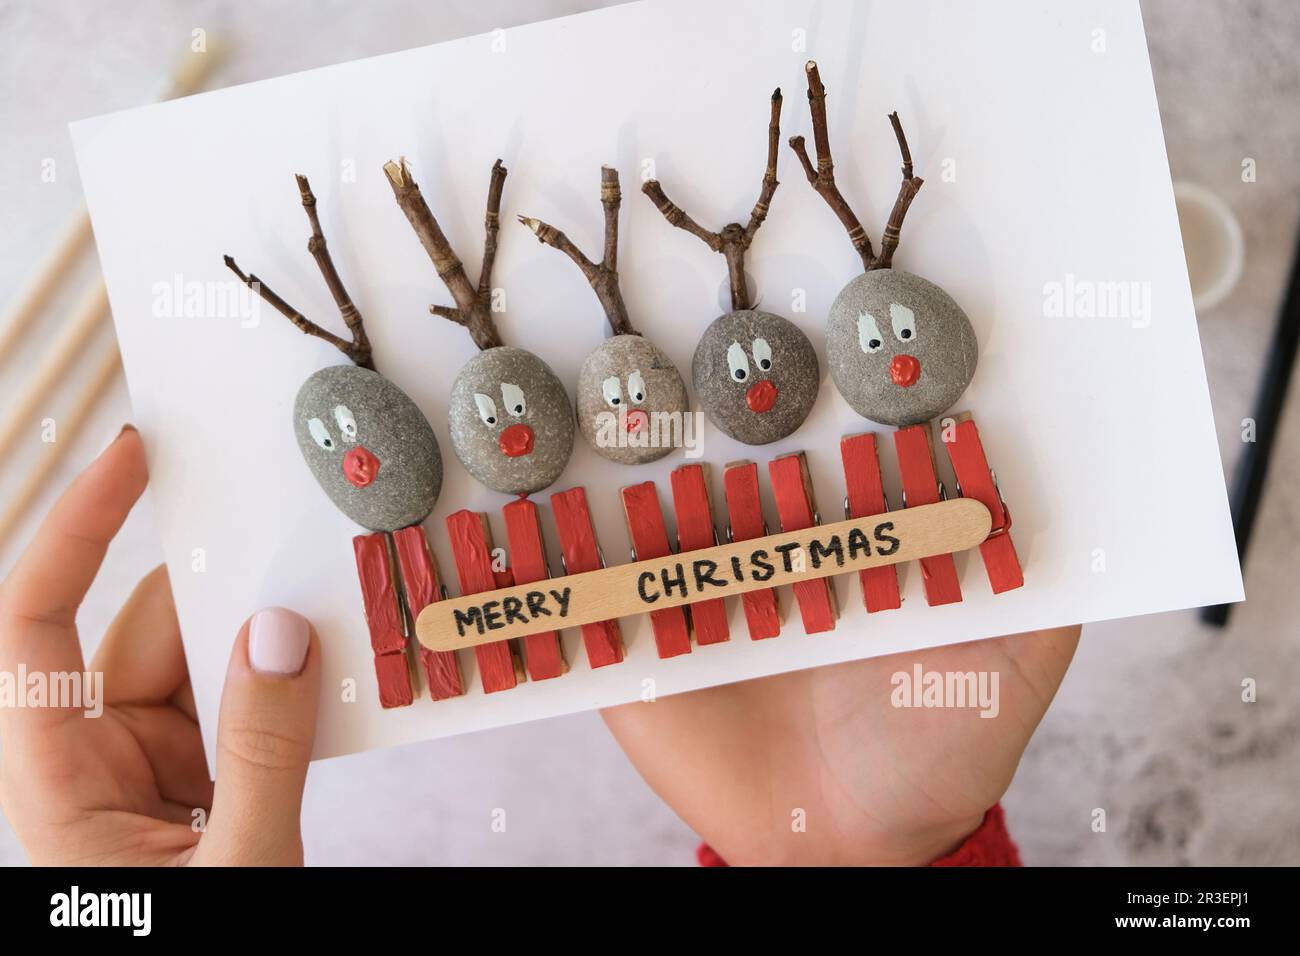 Bricolage Merry Christmas cerf sur carte de voeux carte postale faite de galets, de pierres de mer, de cloespins et de branches sur fond blanc. N/a Banque D'Images